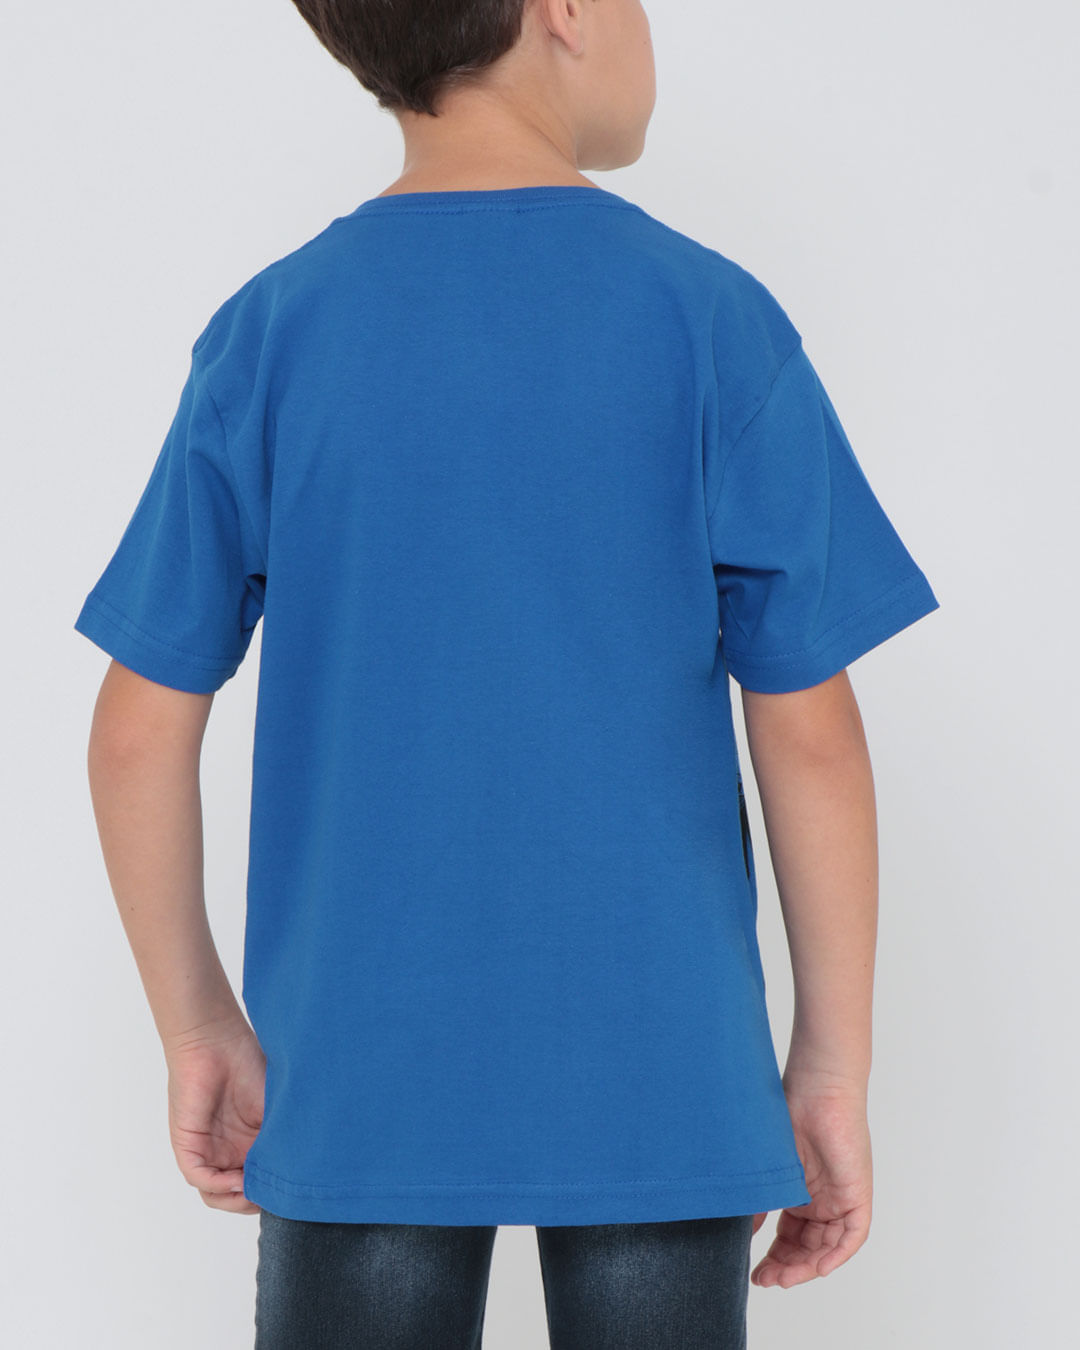 Camiseta-25031-Mc-M412-Capa---Azul-Medio